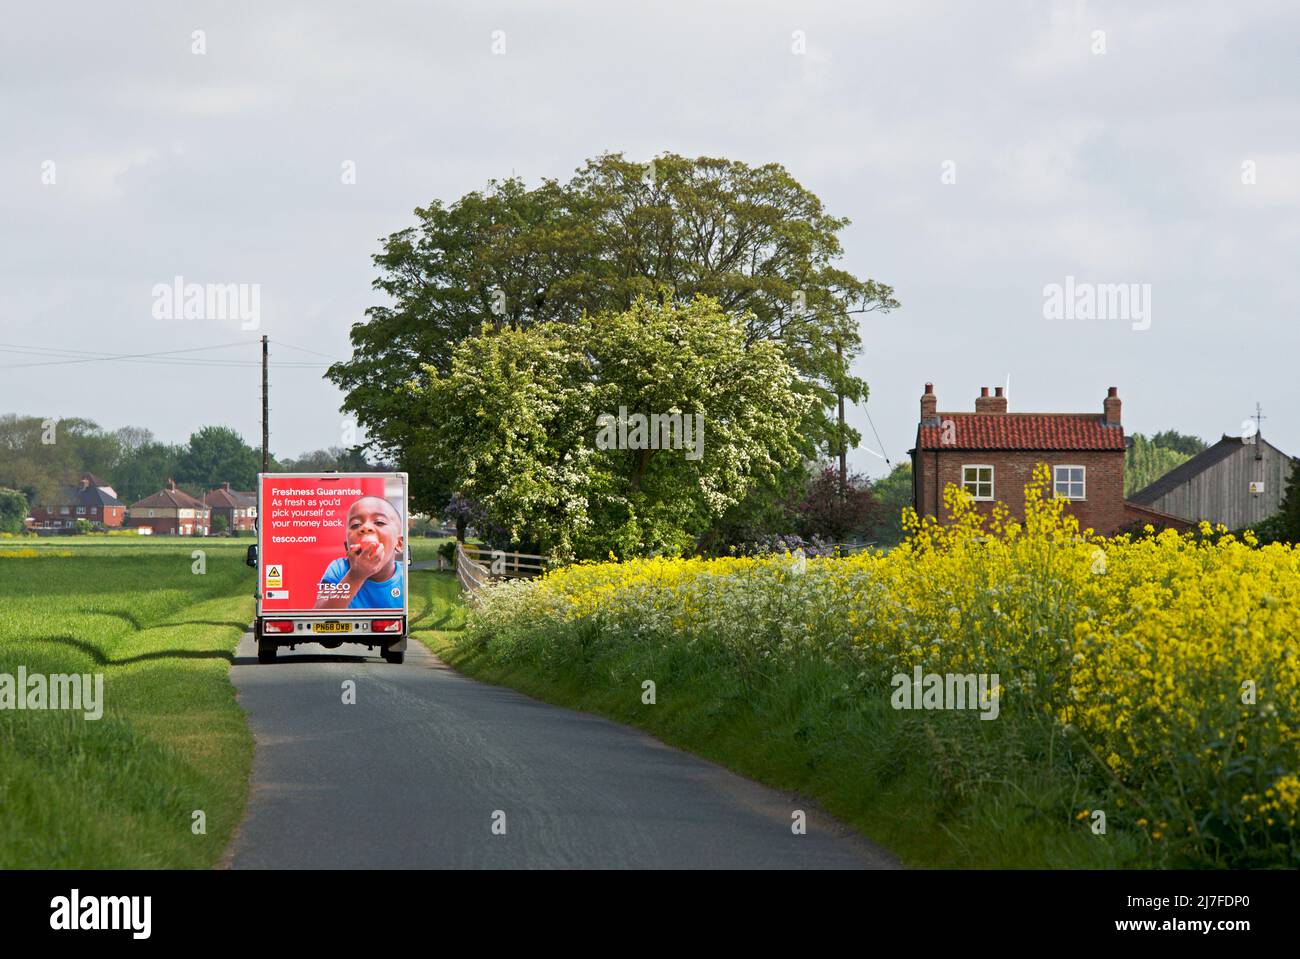 Tesco livrant une fourgonnette, une maison et des terres agricoles près de Reness, East Yorkshire, Angleterre Royaume-Uni Banque D'Images